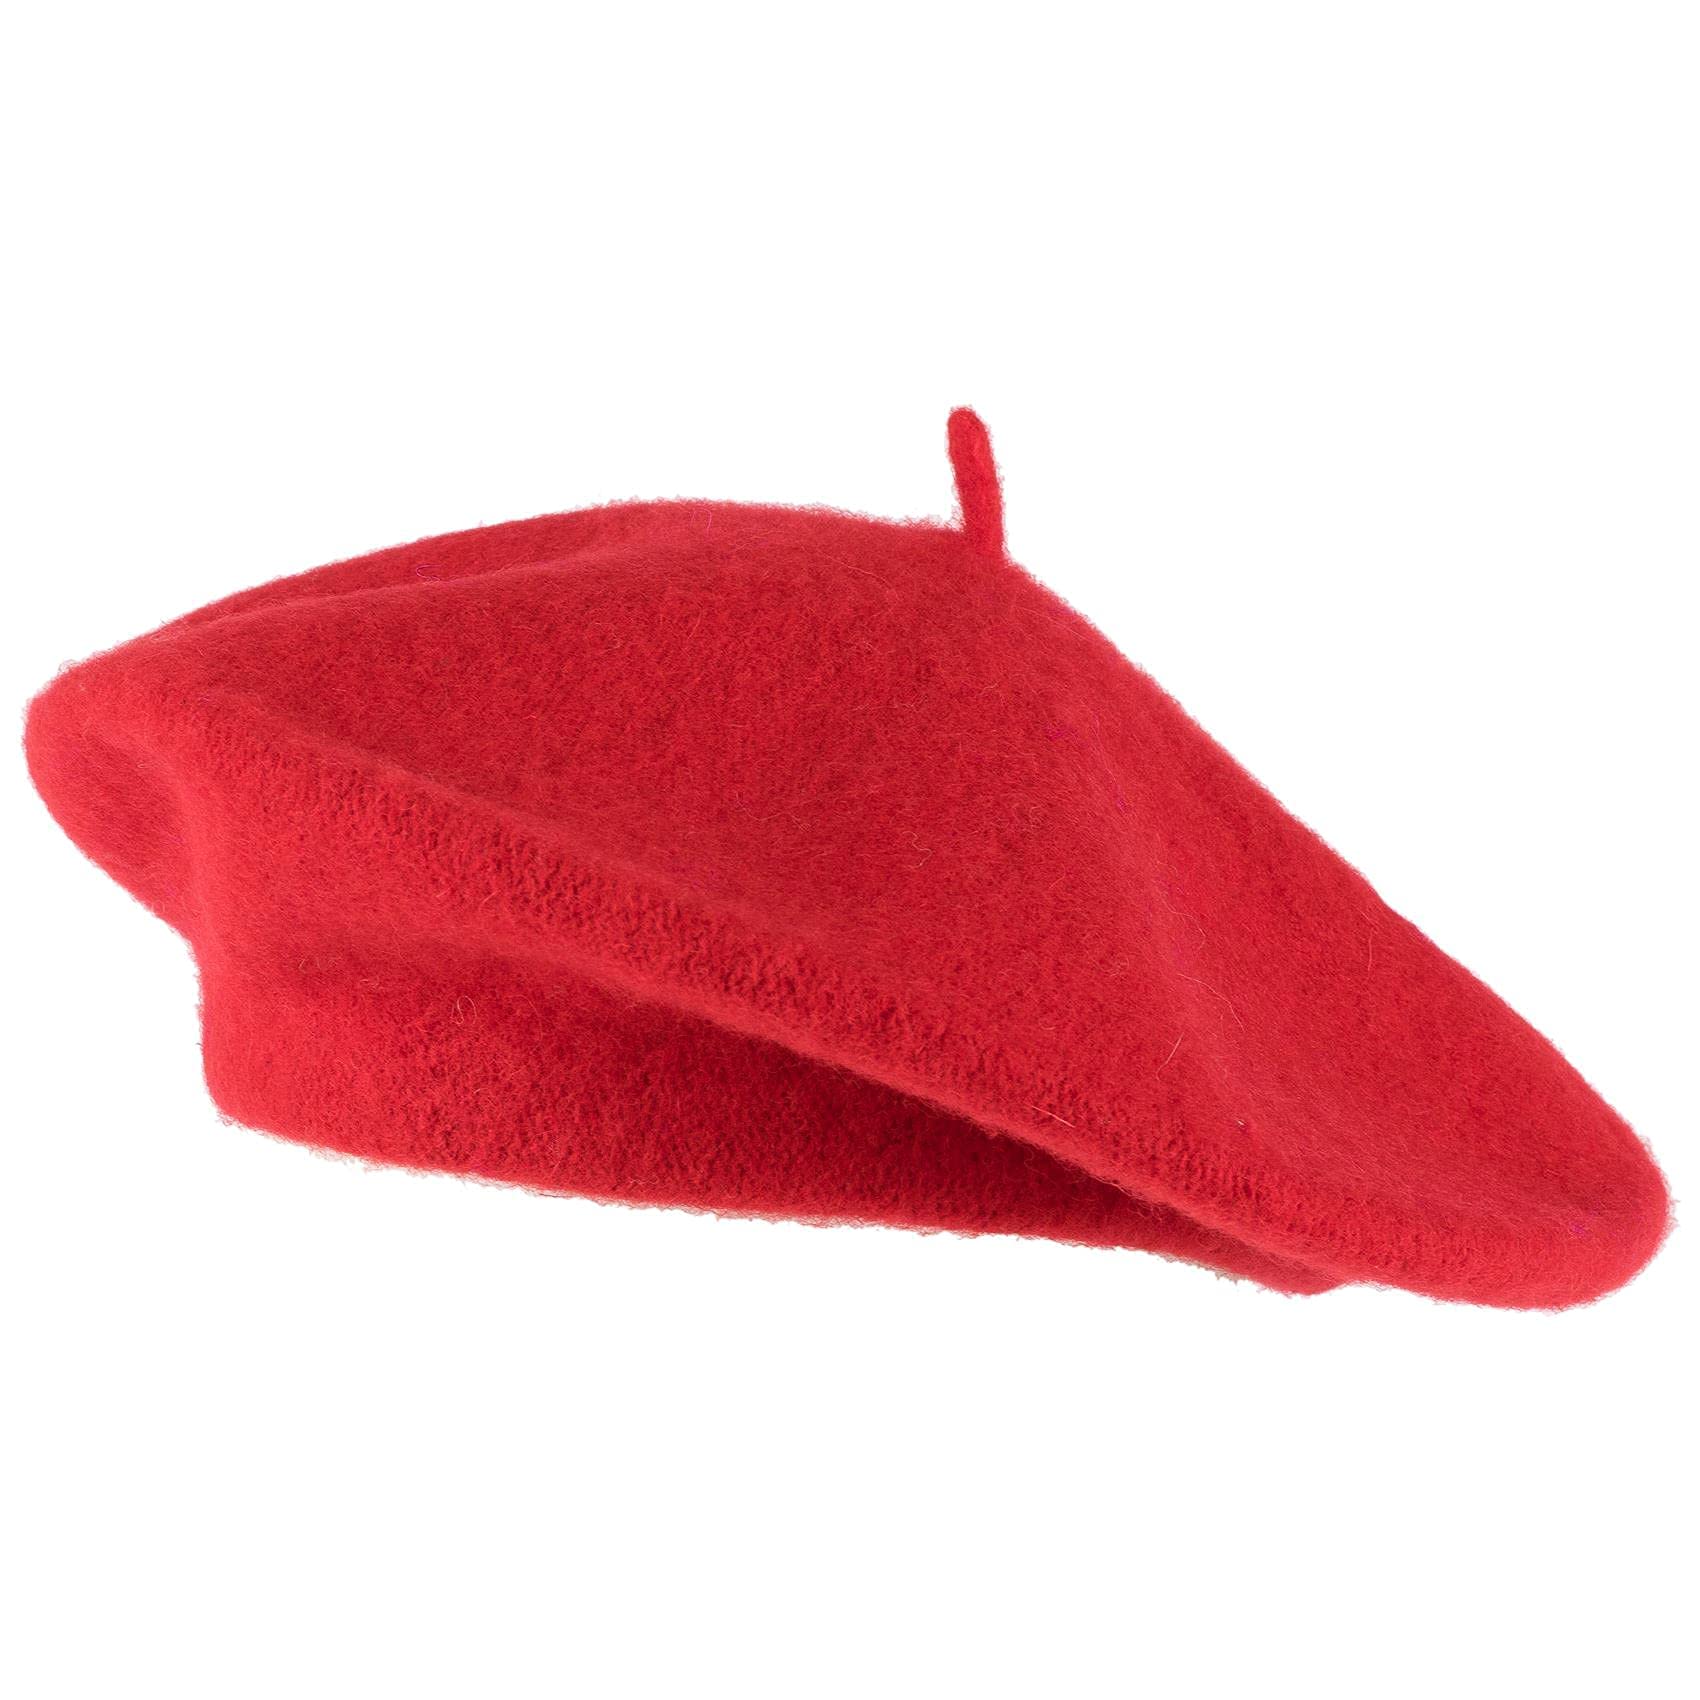 beret hats - Clip Art Library